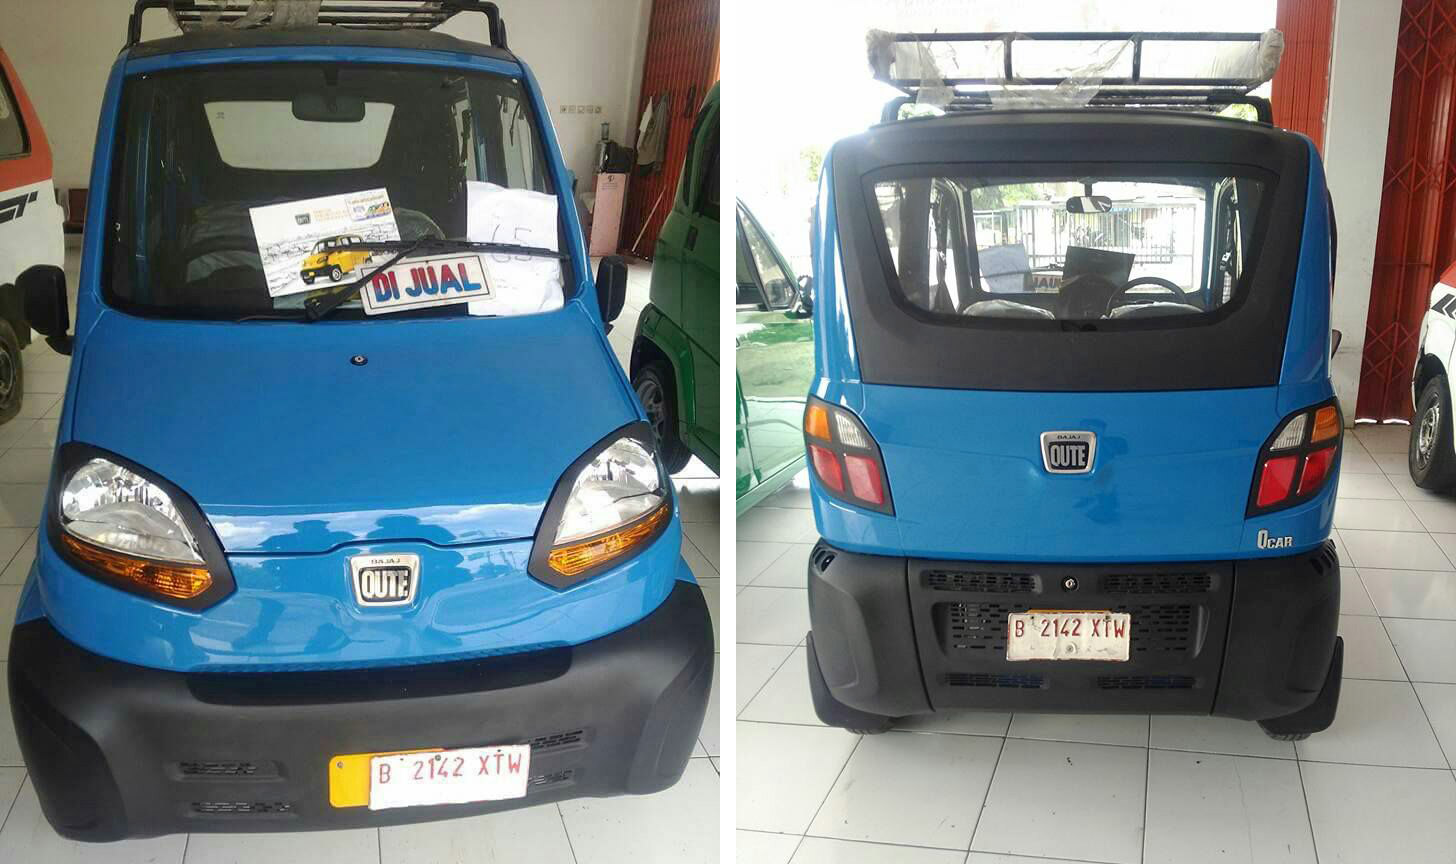 Bajaj, Mobil paling murah 2017 Bajaj Qute mobil termurah di Indonesia: Bajaj Qute Jadi Mobil Termurah di Indonesia Dengan Harga Setara Ninja